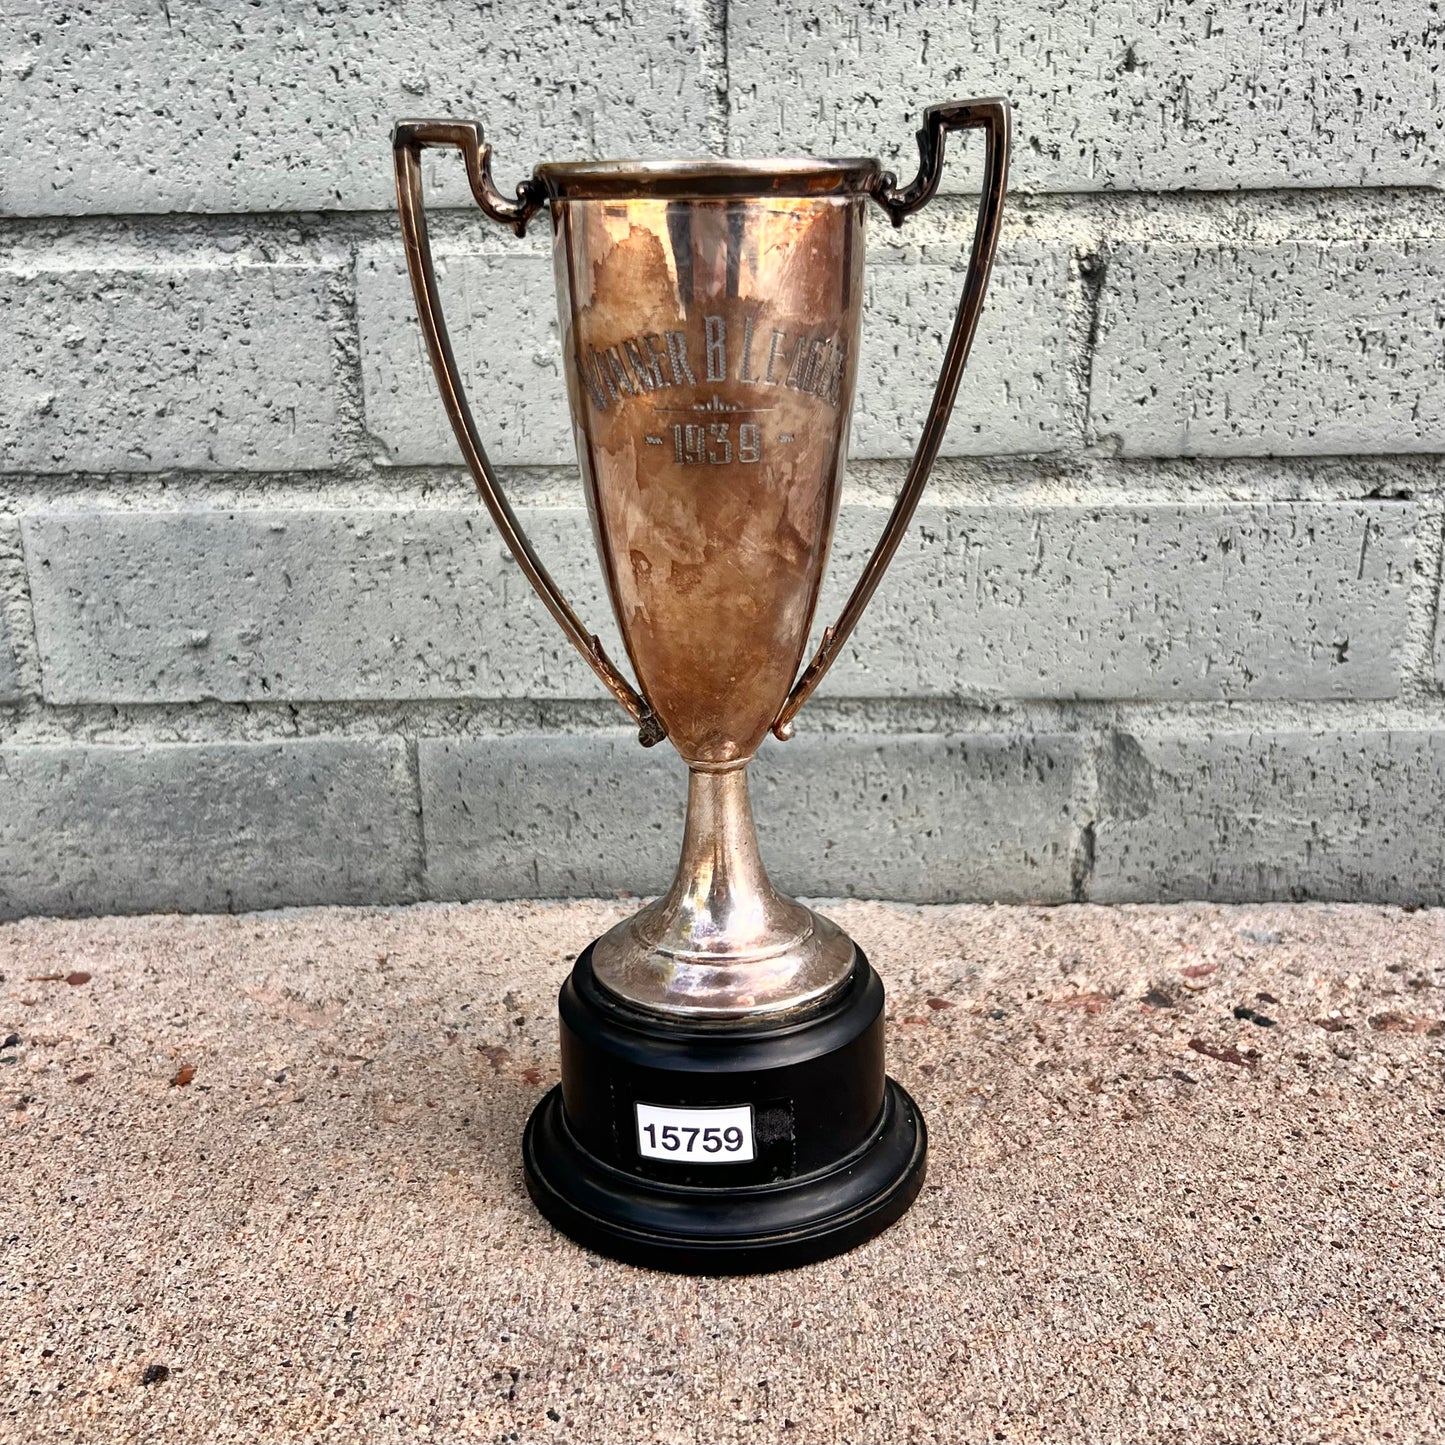 Trophy "Winner B League, 1939"